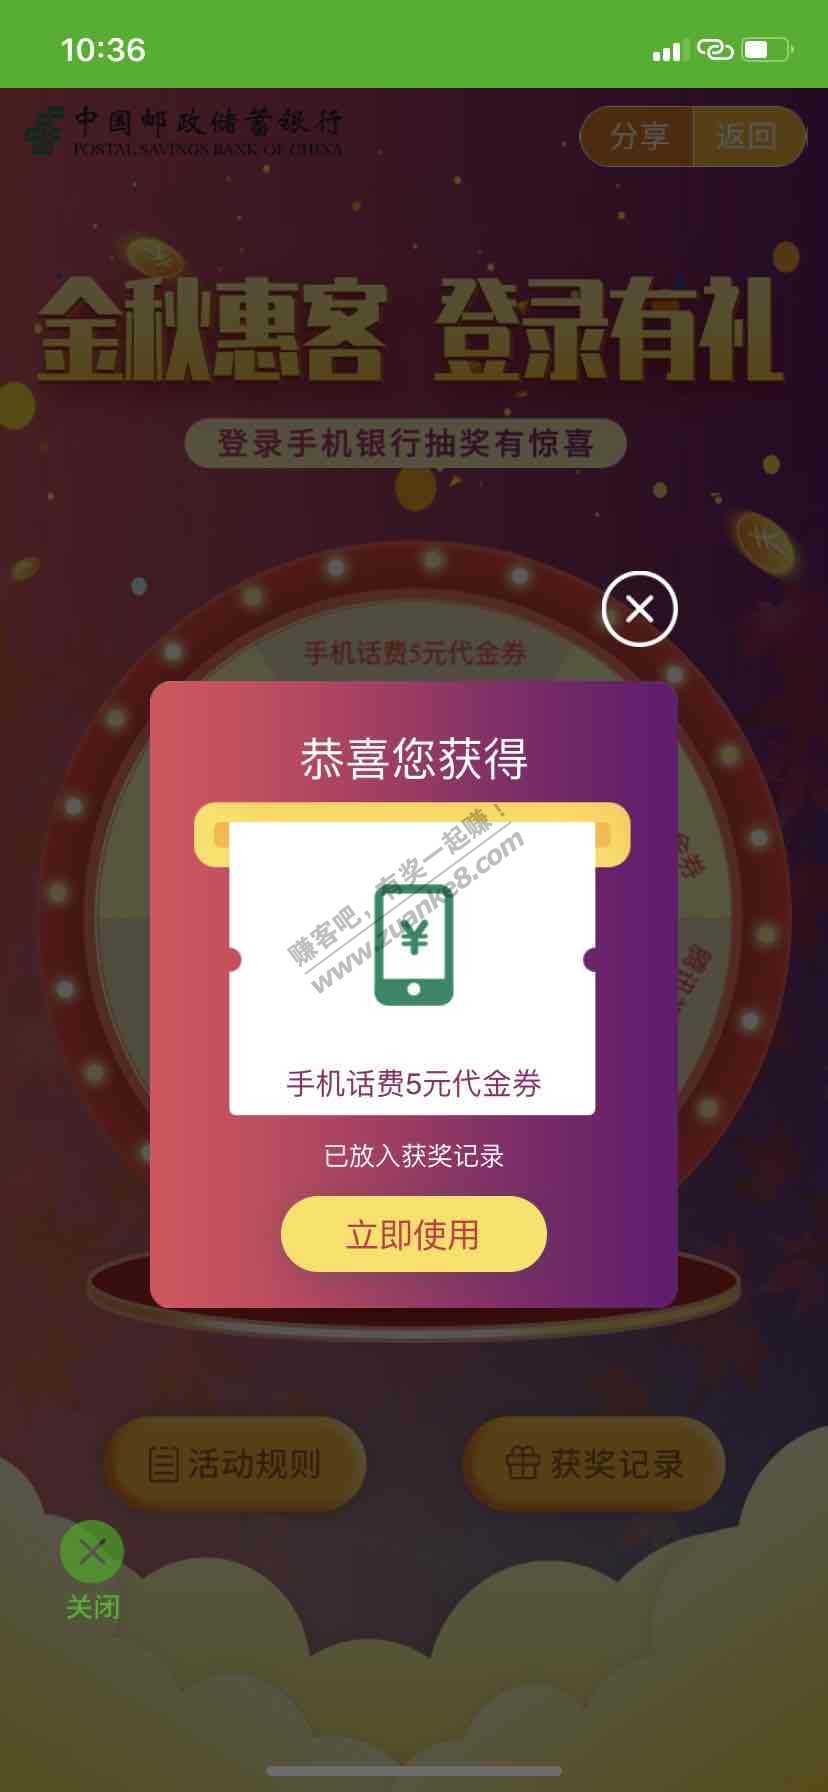 邮储app登录有礼水了5话费-惠小助(52huixz.com)